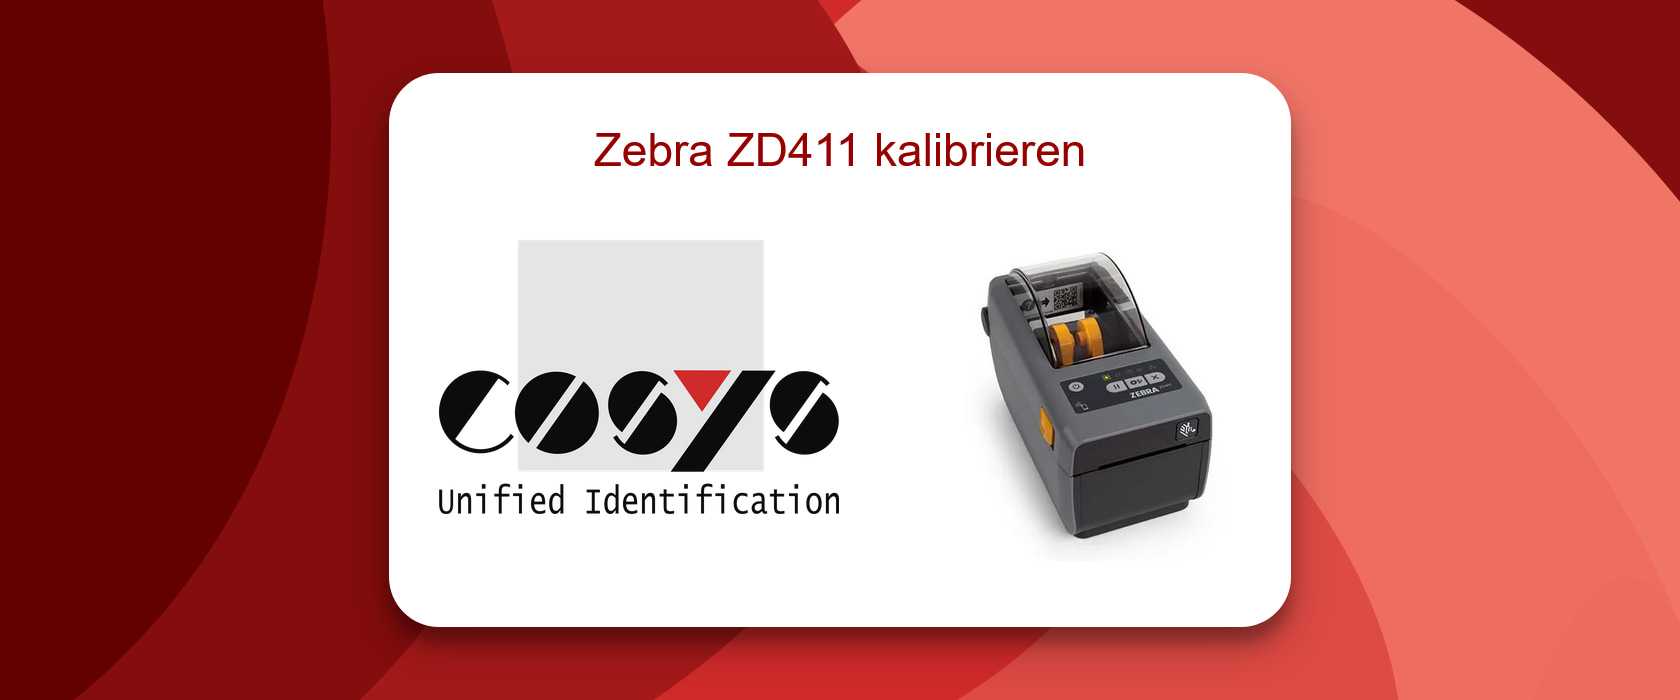 Kalibrierungsservice für Zebra ZD411